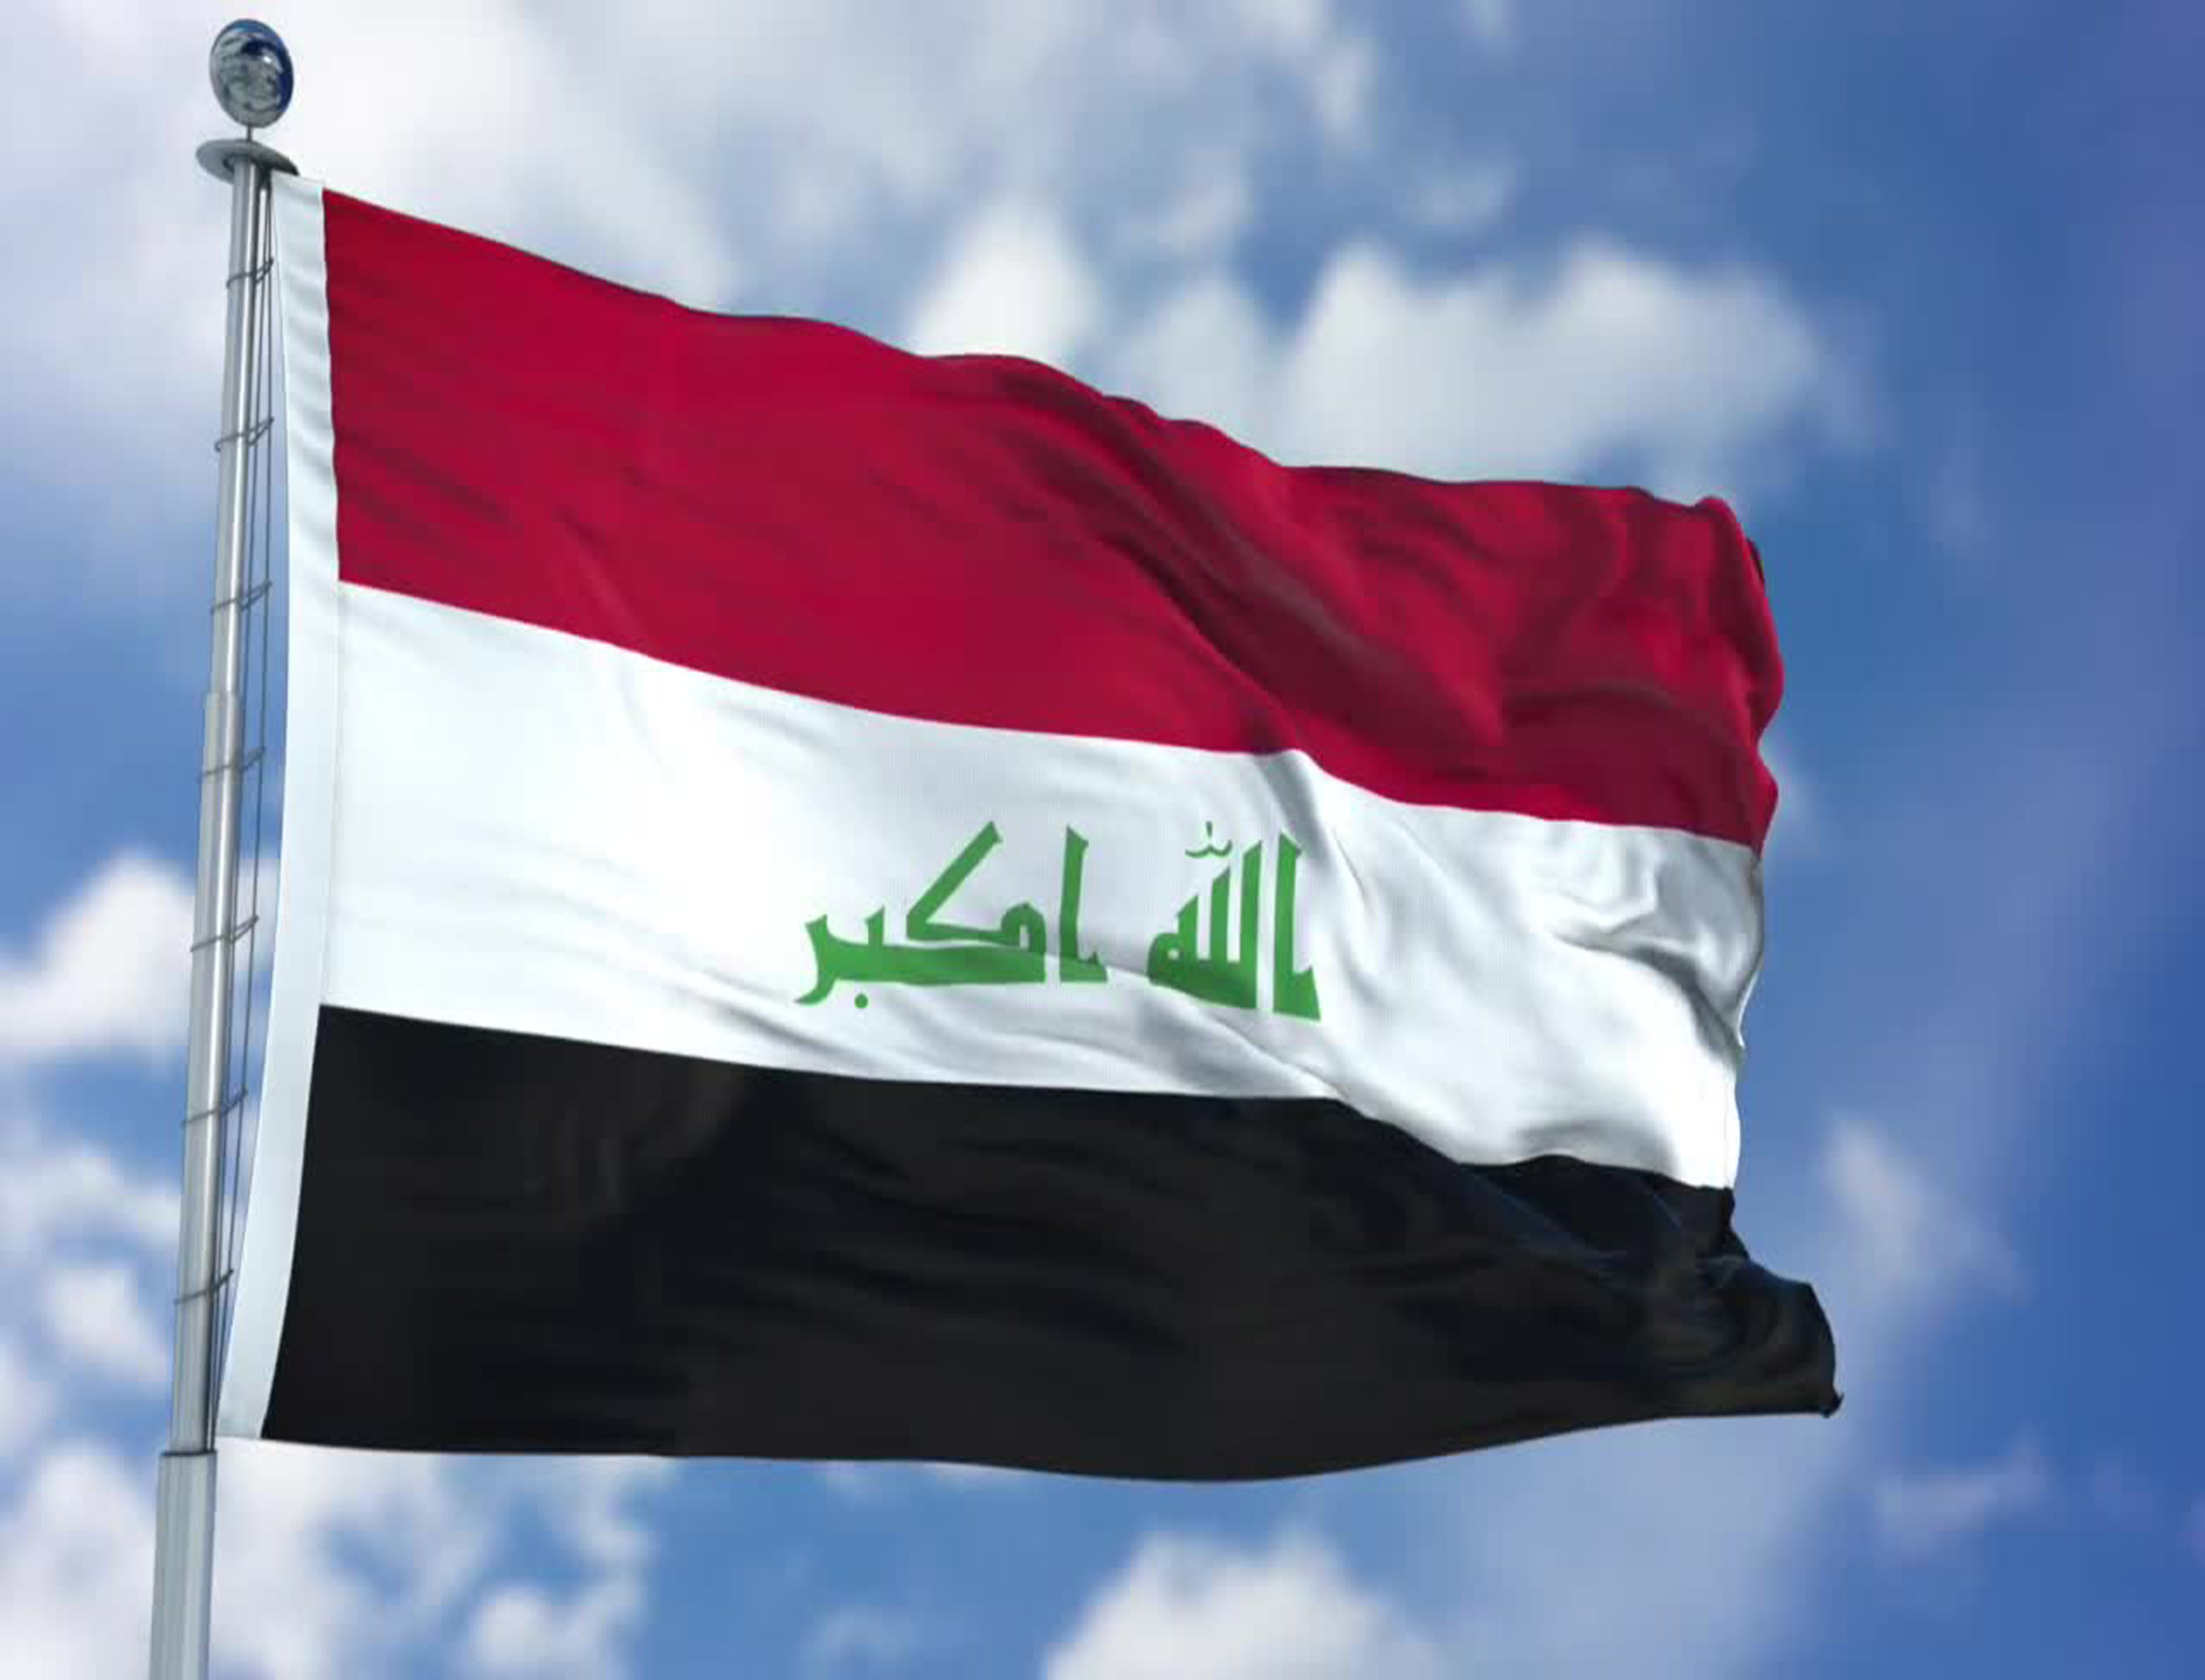 الأمين العام للاتحاد يدين محاولة اغتيال رئيس الوزراء العراقي 